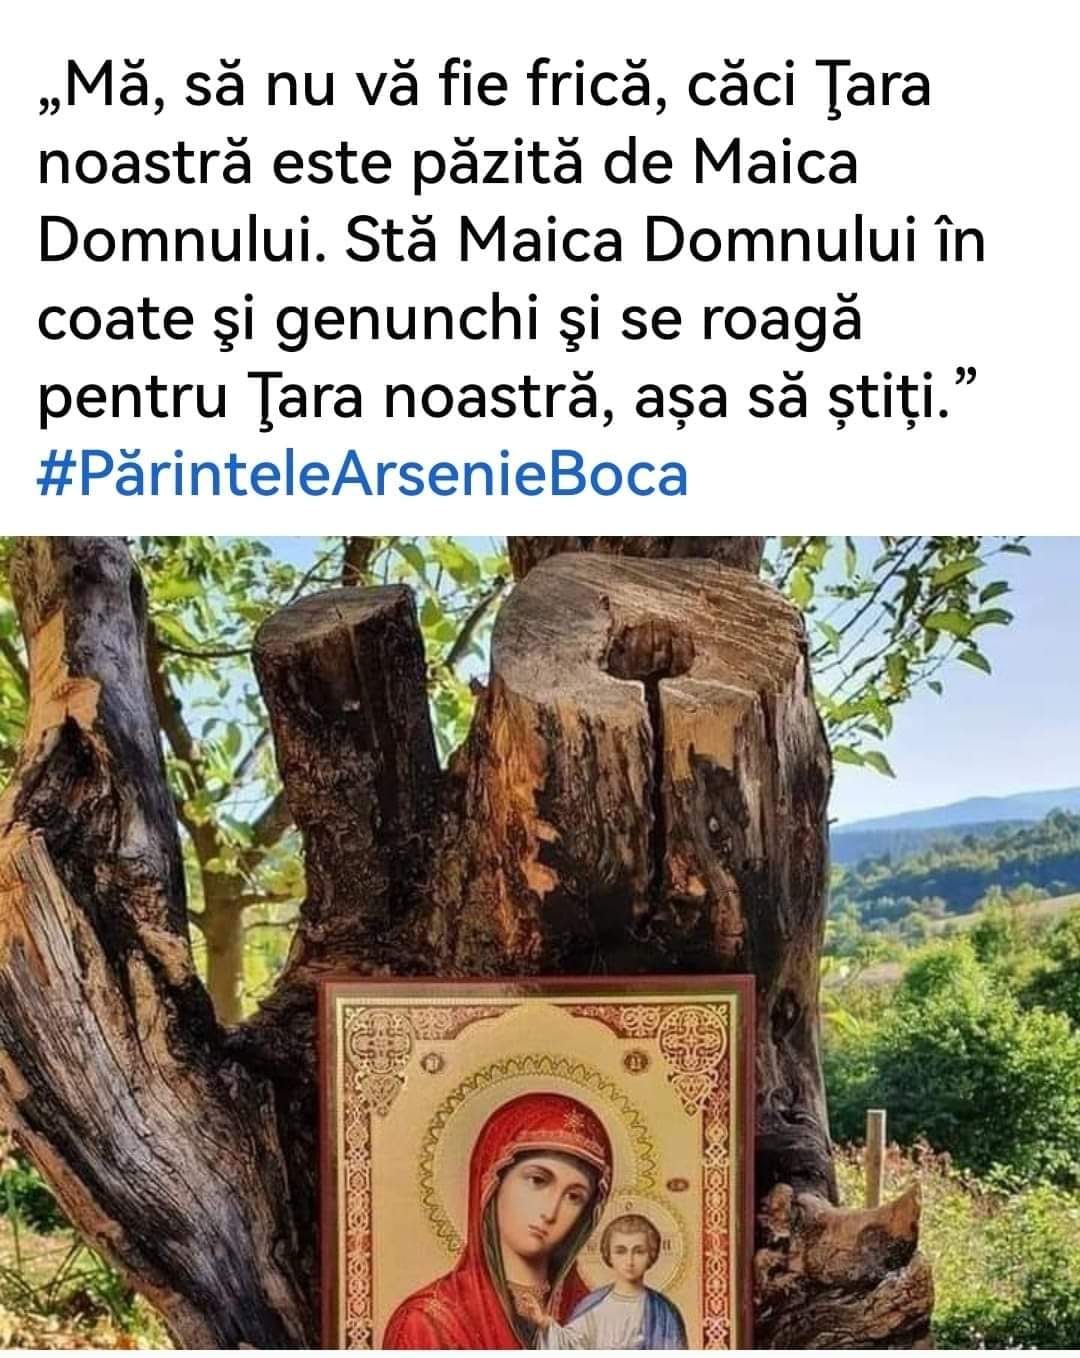 Părintele Arsenie Boca: "... să nu vă fie frică ..." 